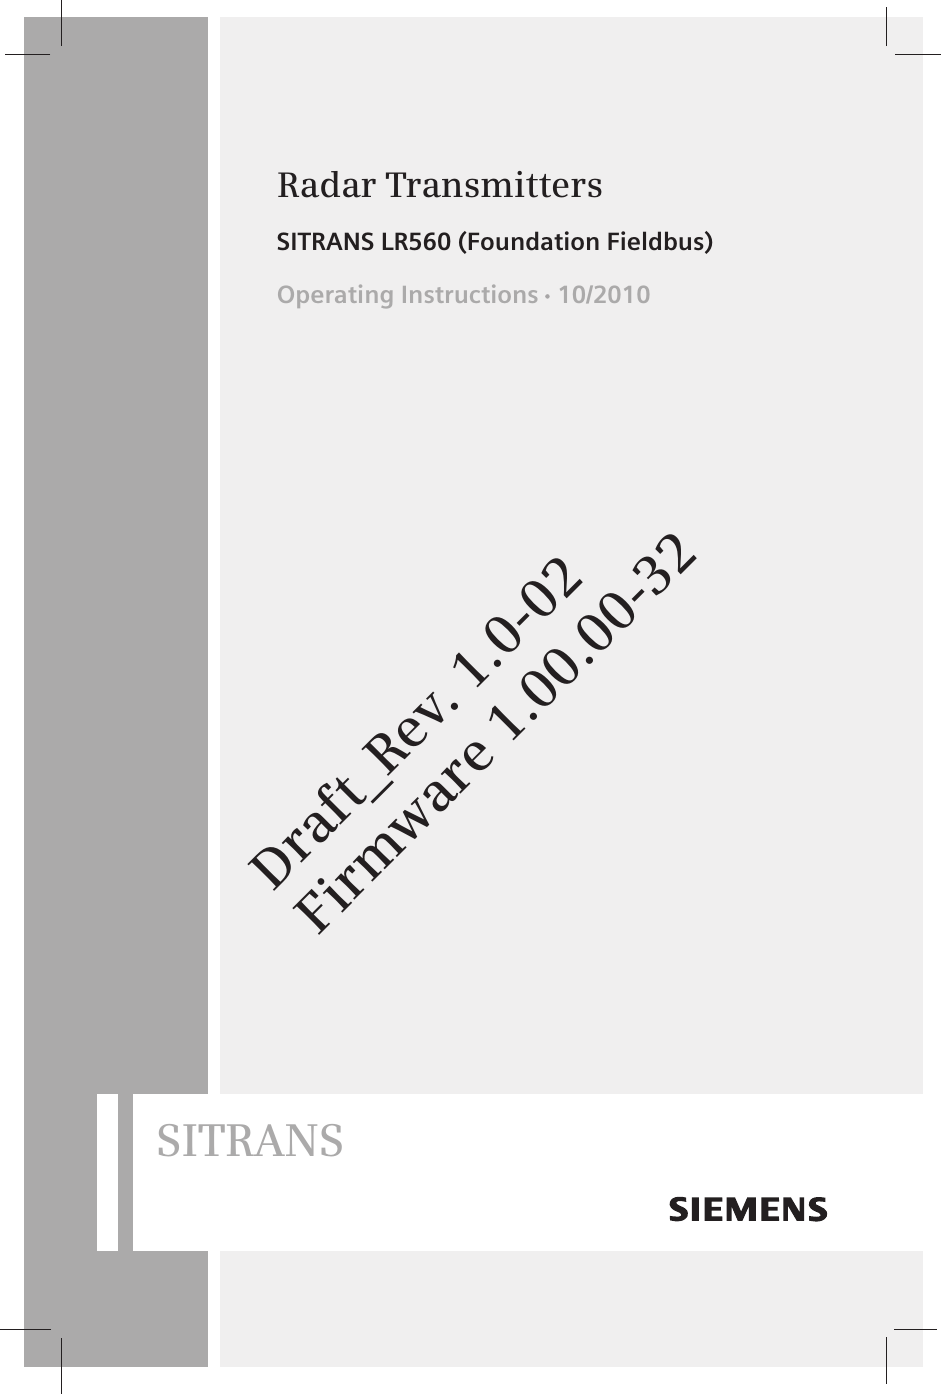 Radar TransmittersOperating Instructions   10/2010SITRANS LR560 (Foundation Fieldbus)SITRANSDraft_Rev. 1.0-02Firmware 1.00.00-32